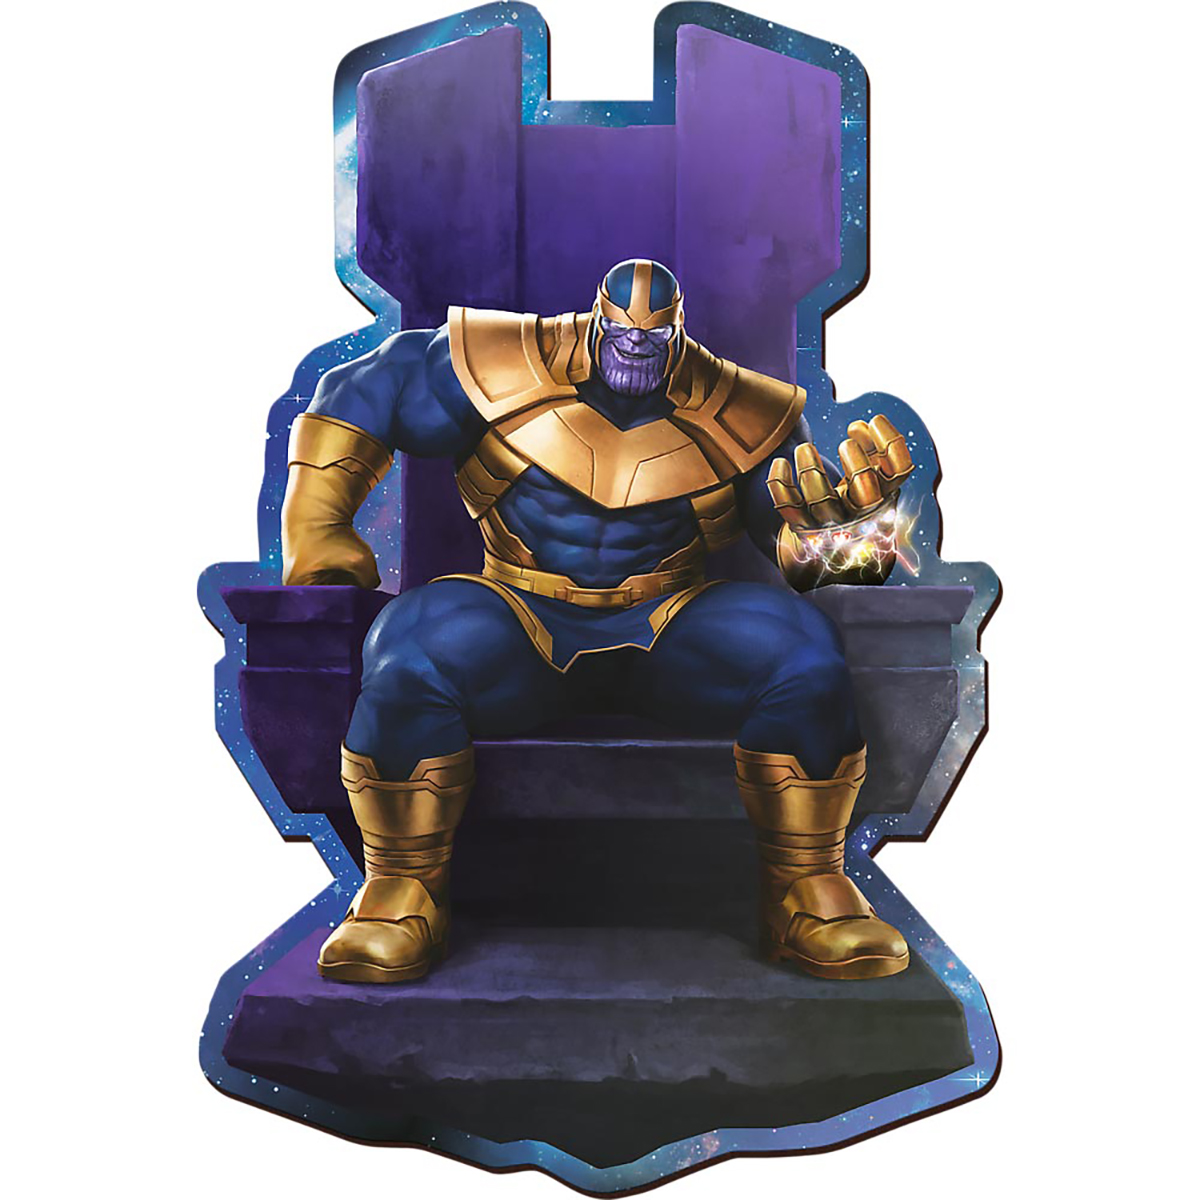 TREFL Holz Form-Puzzle (160 Teile) - Thanos Puzzle Thron Avengers auf dem Marvel 